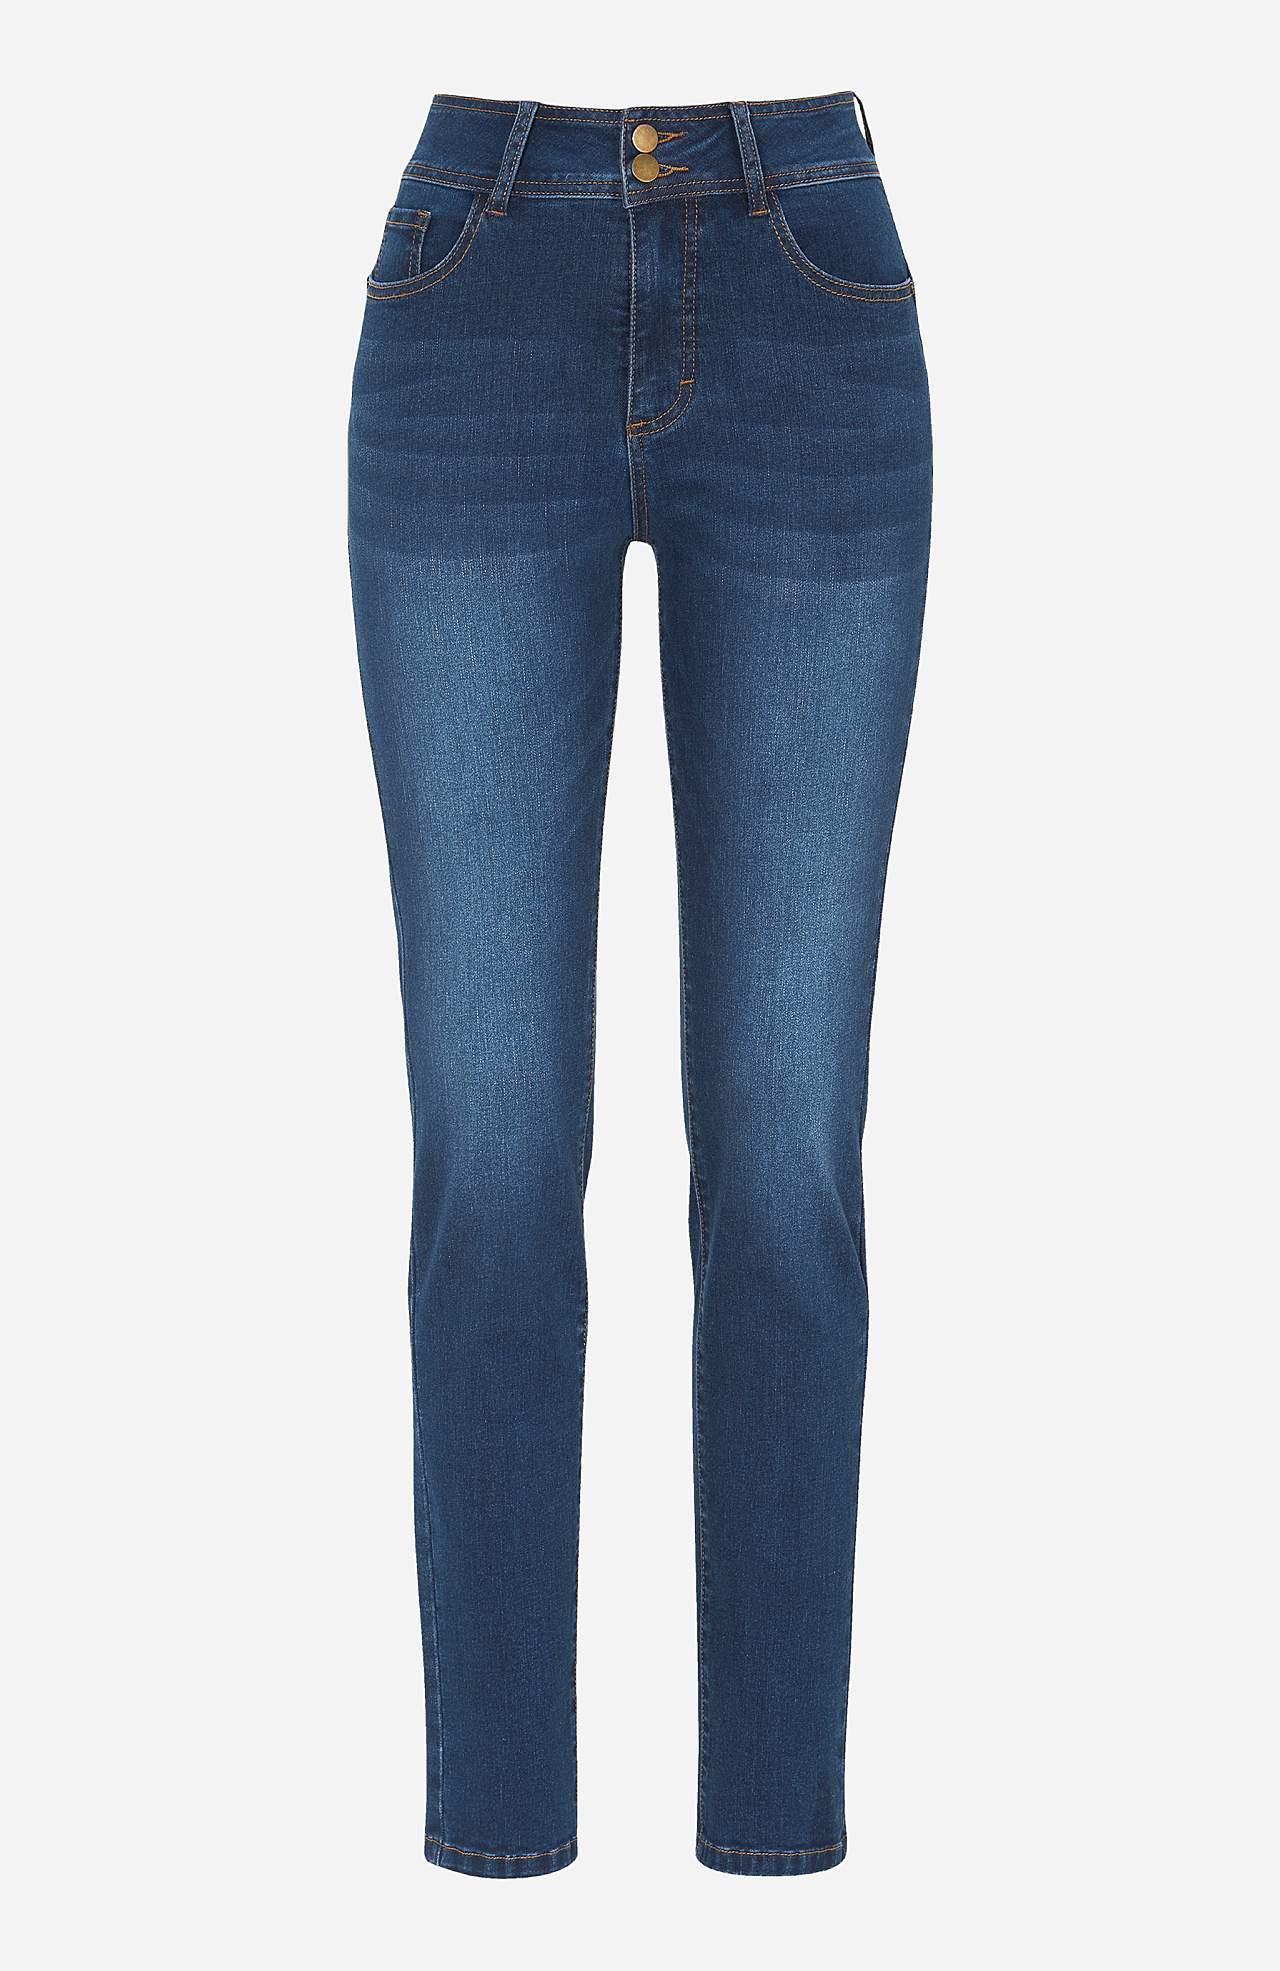 Jeansy modelujące ze stretchem Judy